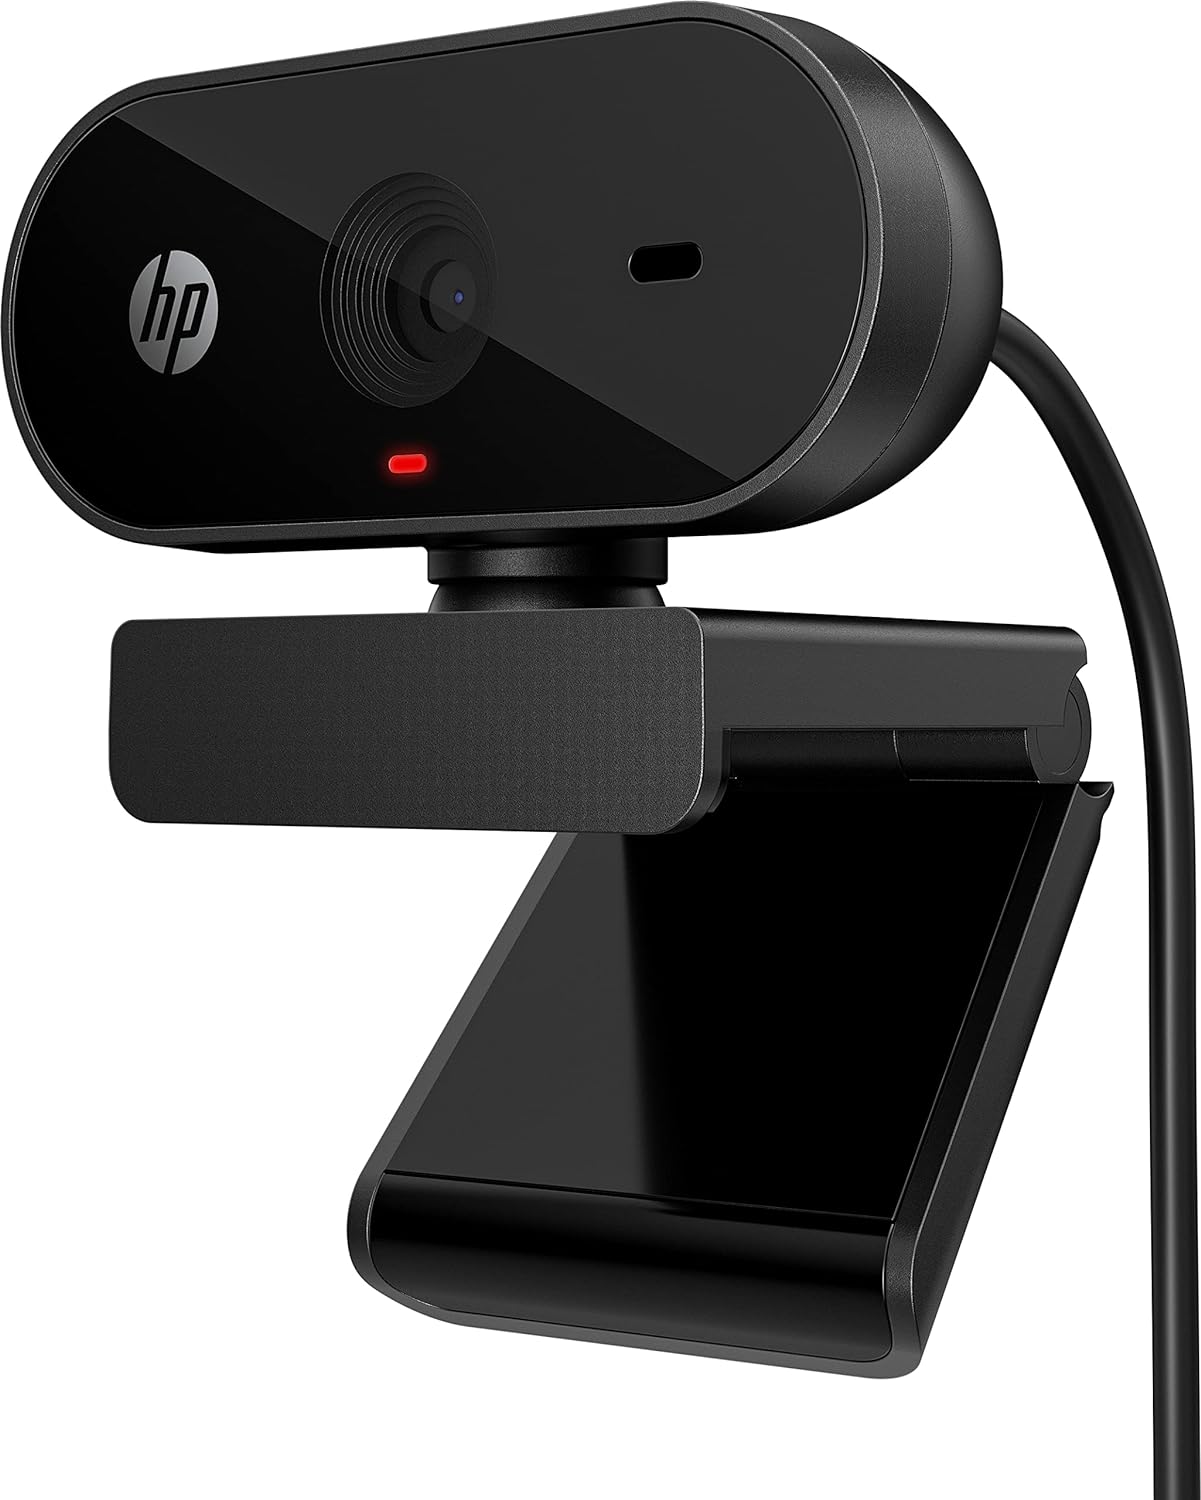 HP webcam software interface